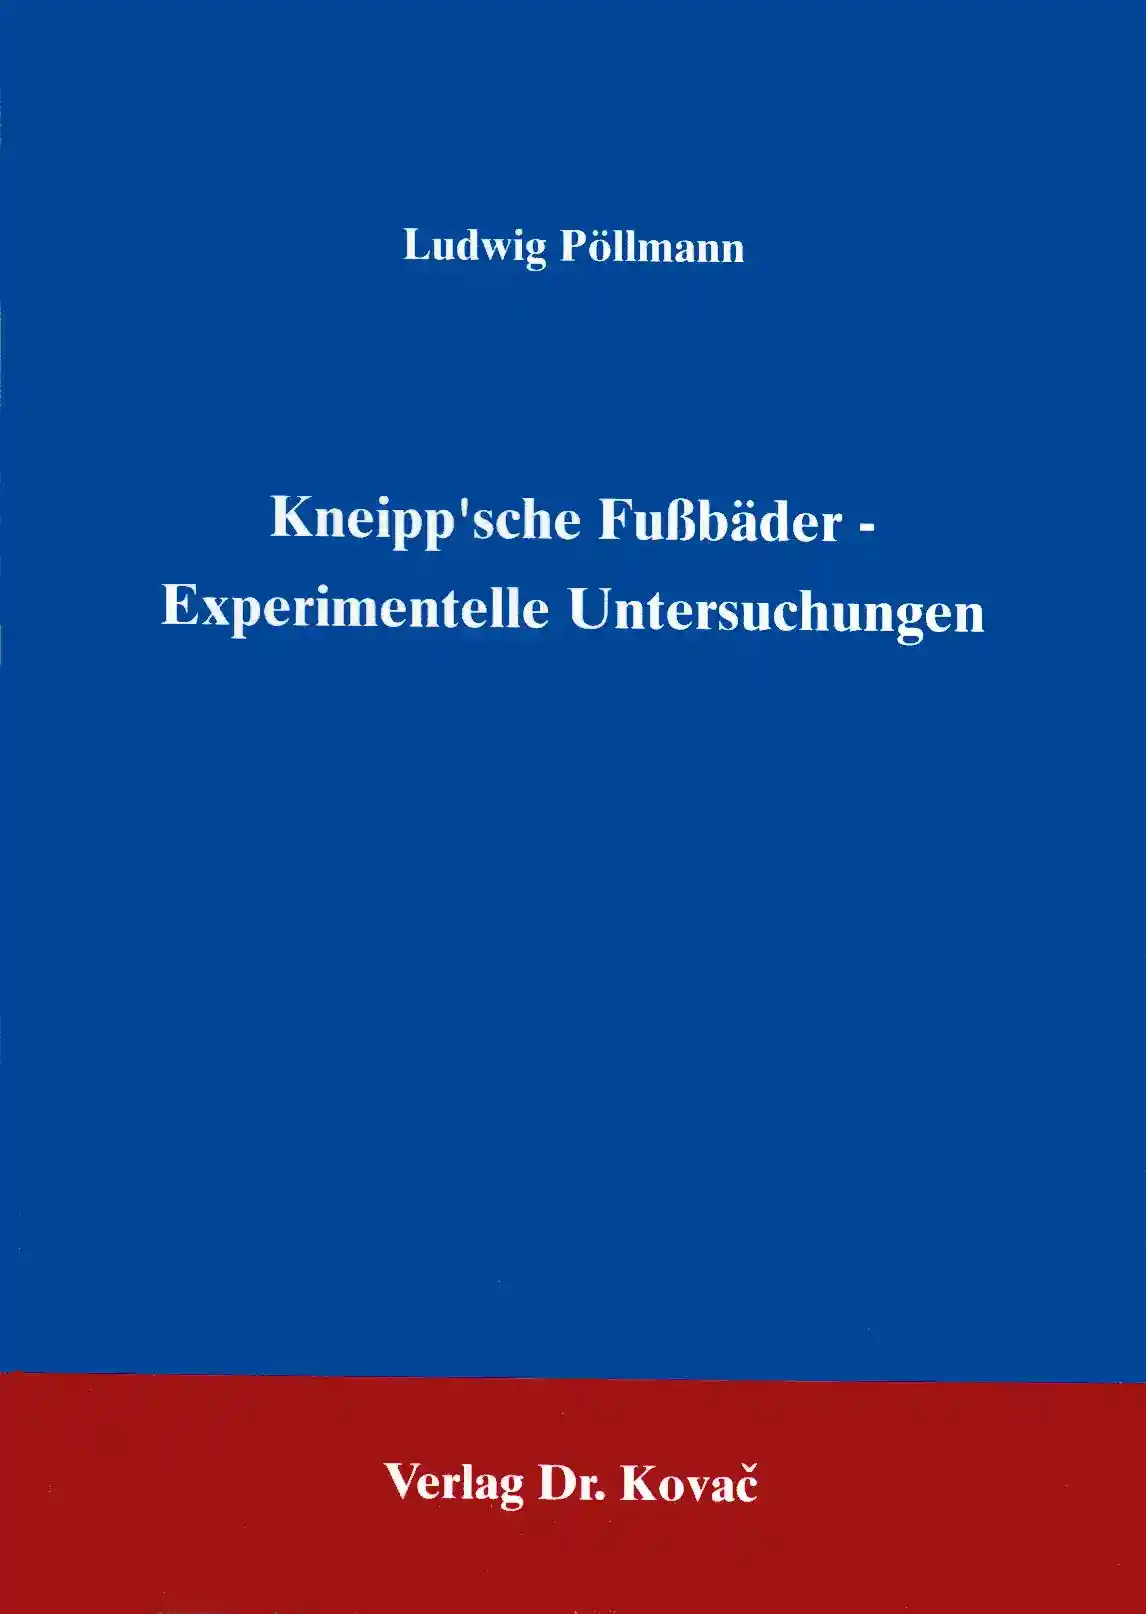 Kneipp‘sche Fußbäder (Forschungsarbeit)